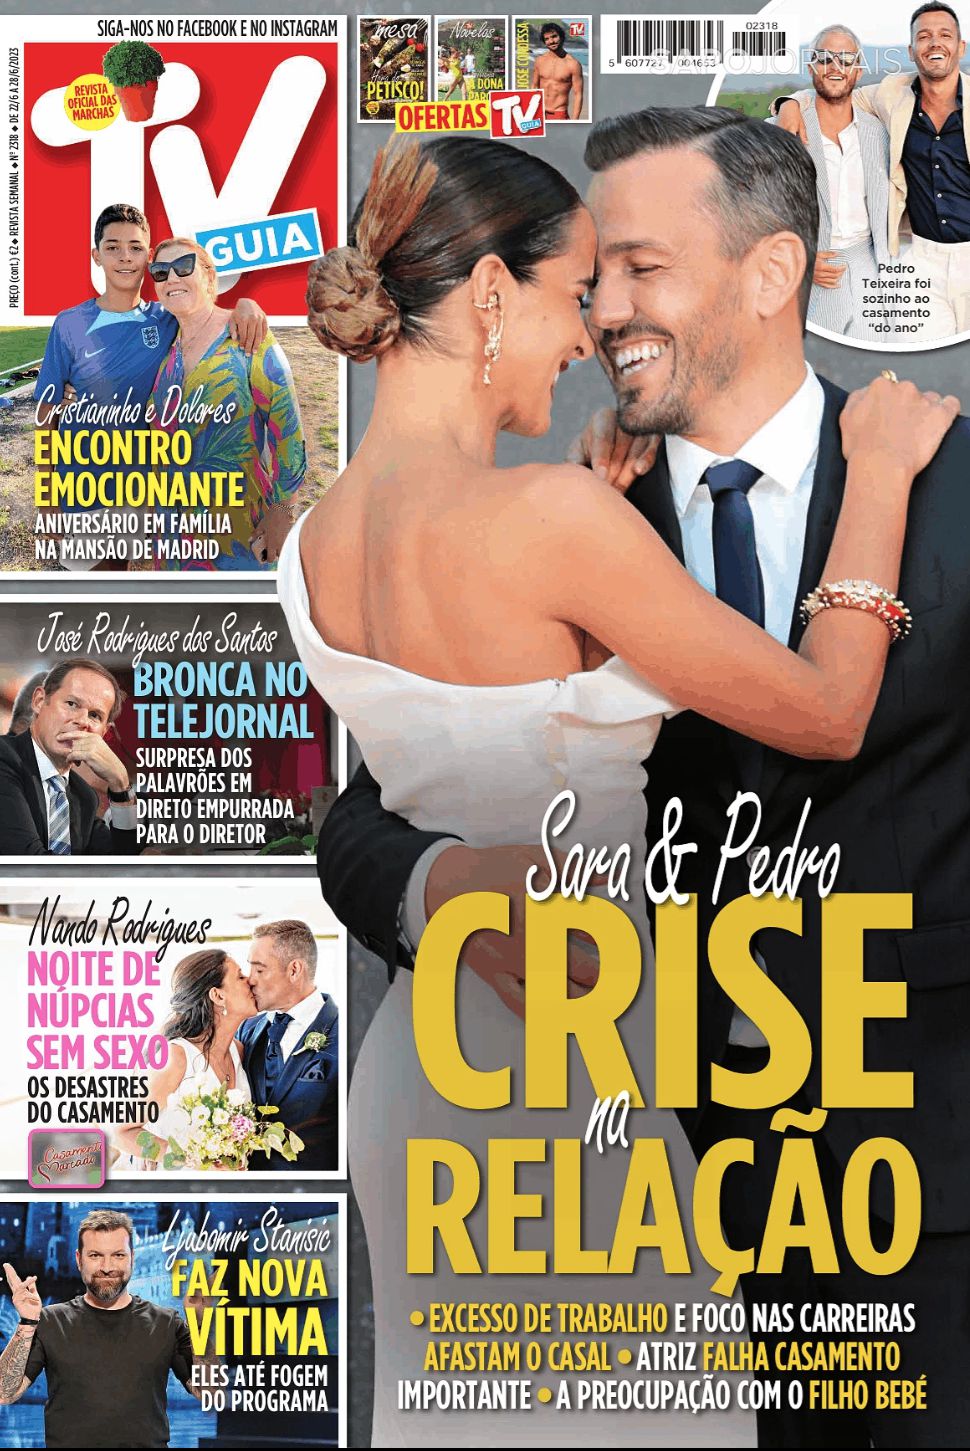 Sara Matos e Pedro Teixeira vivem crise na relação?: “É uma situação muito delicada…”